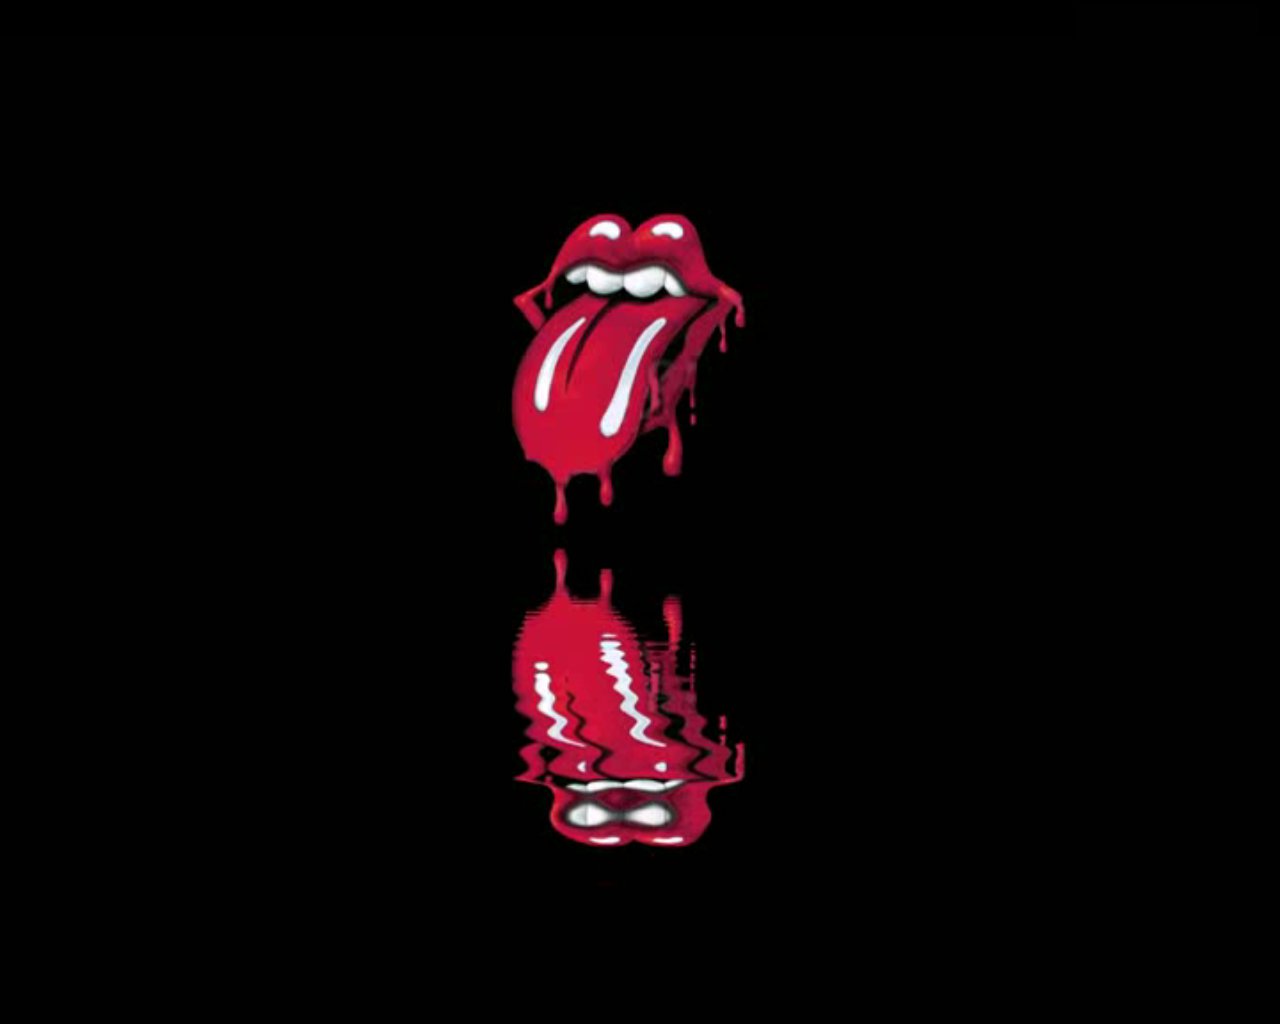 50+] Rolling Stones Wallpaper Screensavers - WallpaperSafari